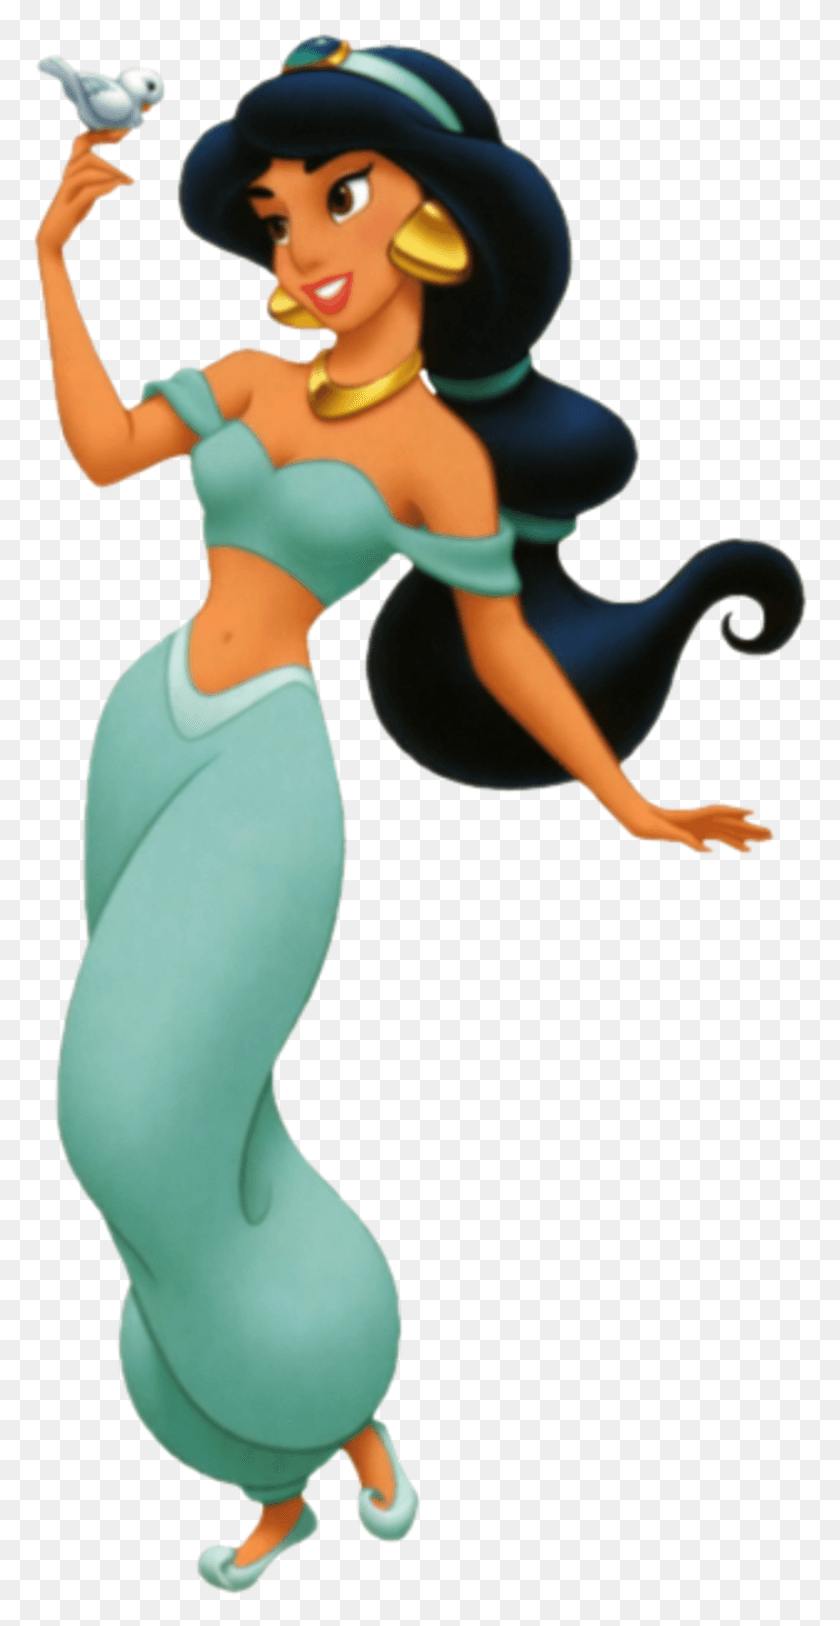 780x1566 La Princesa De Disney Jasmine, Animal, Persona, Humano Hd Png